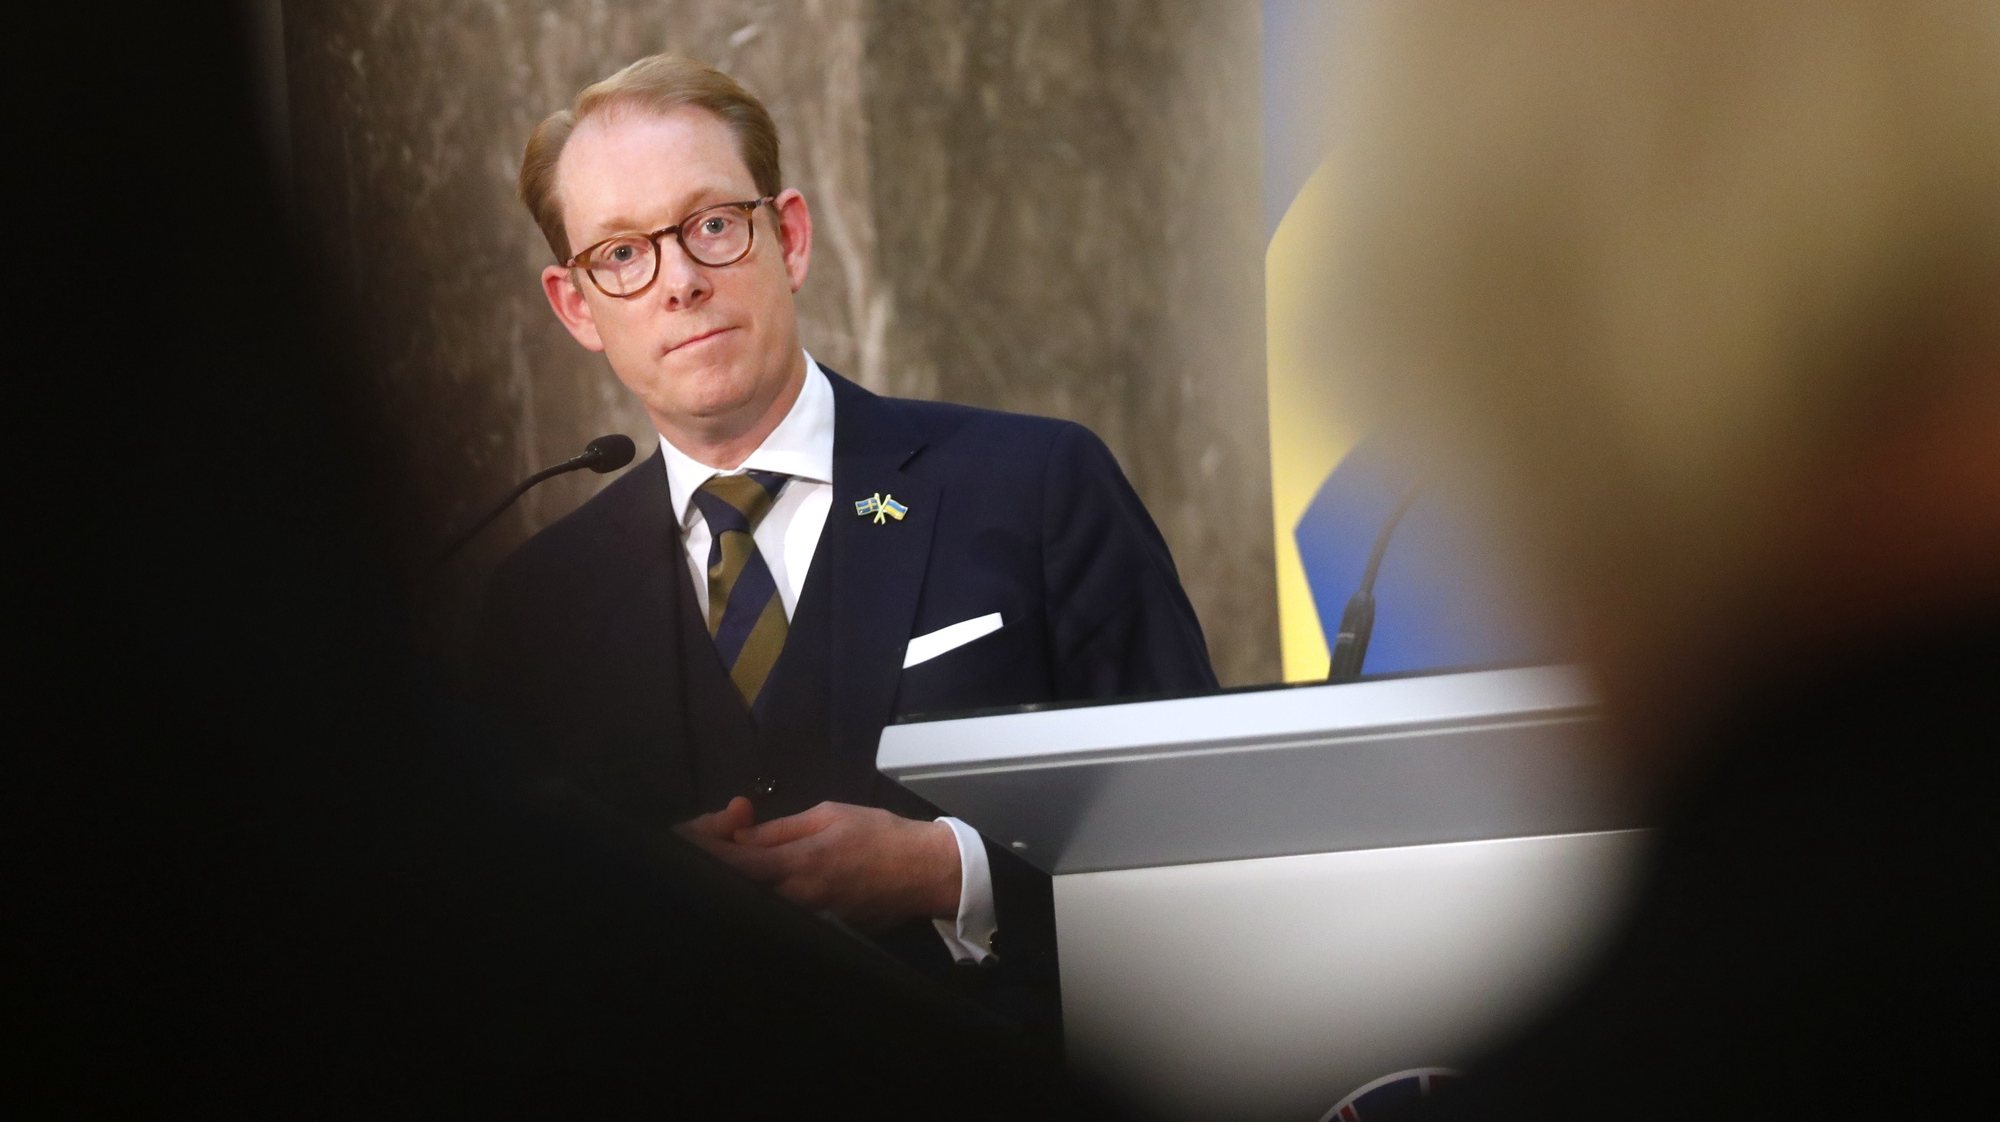 Reagiu o chefe da diplomacia sueca, Tobias Billstrom, em declarações aos media